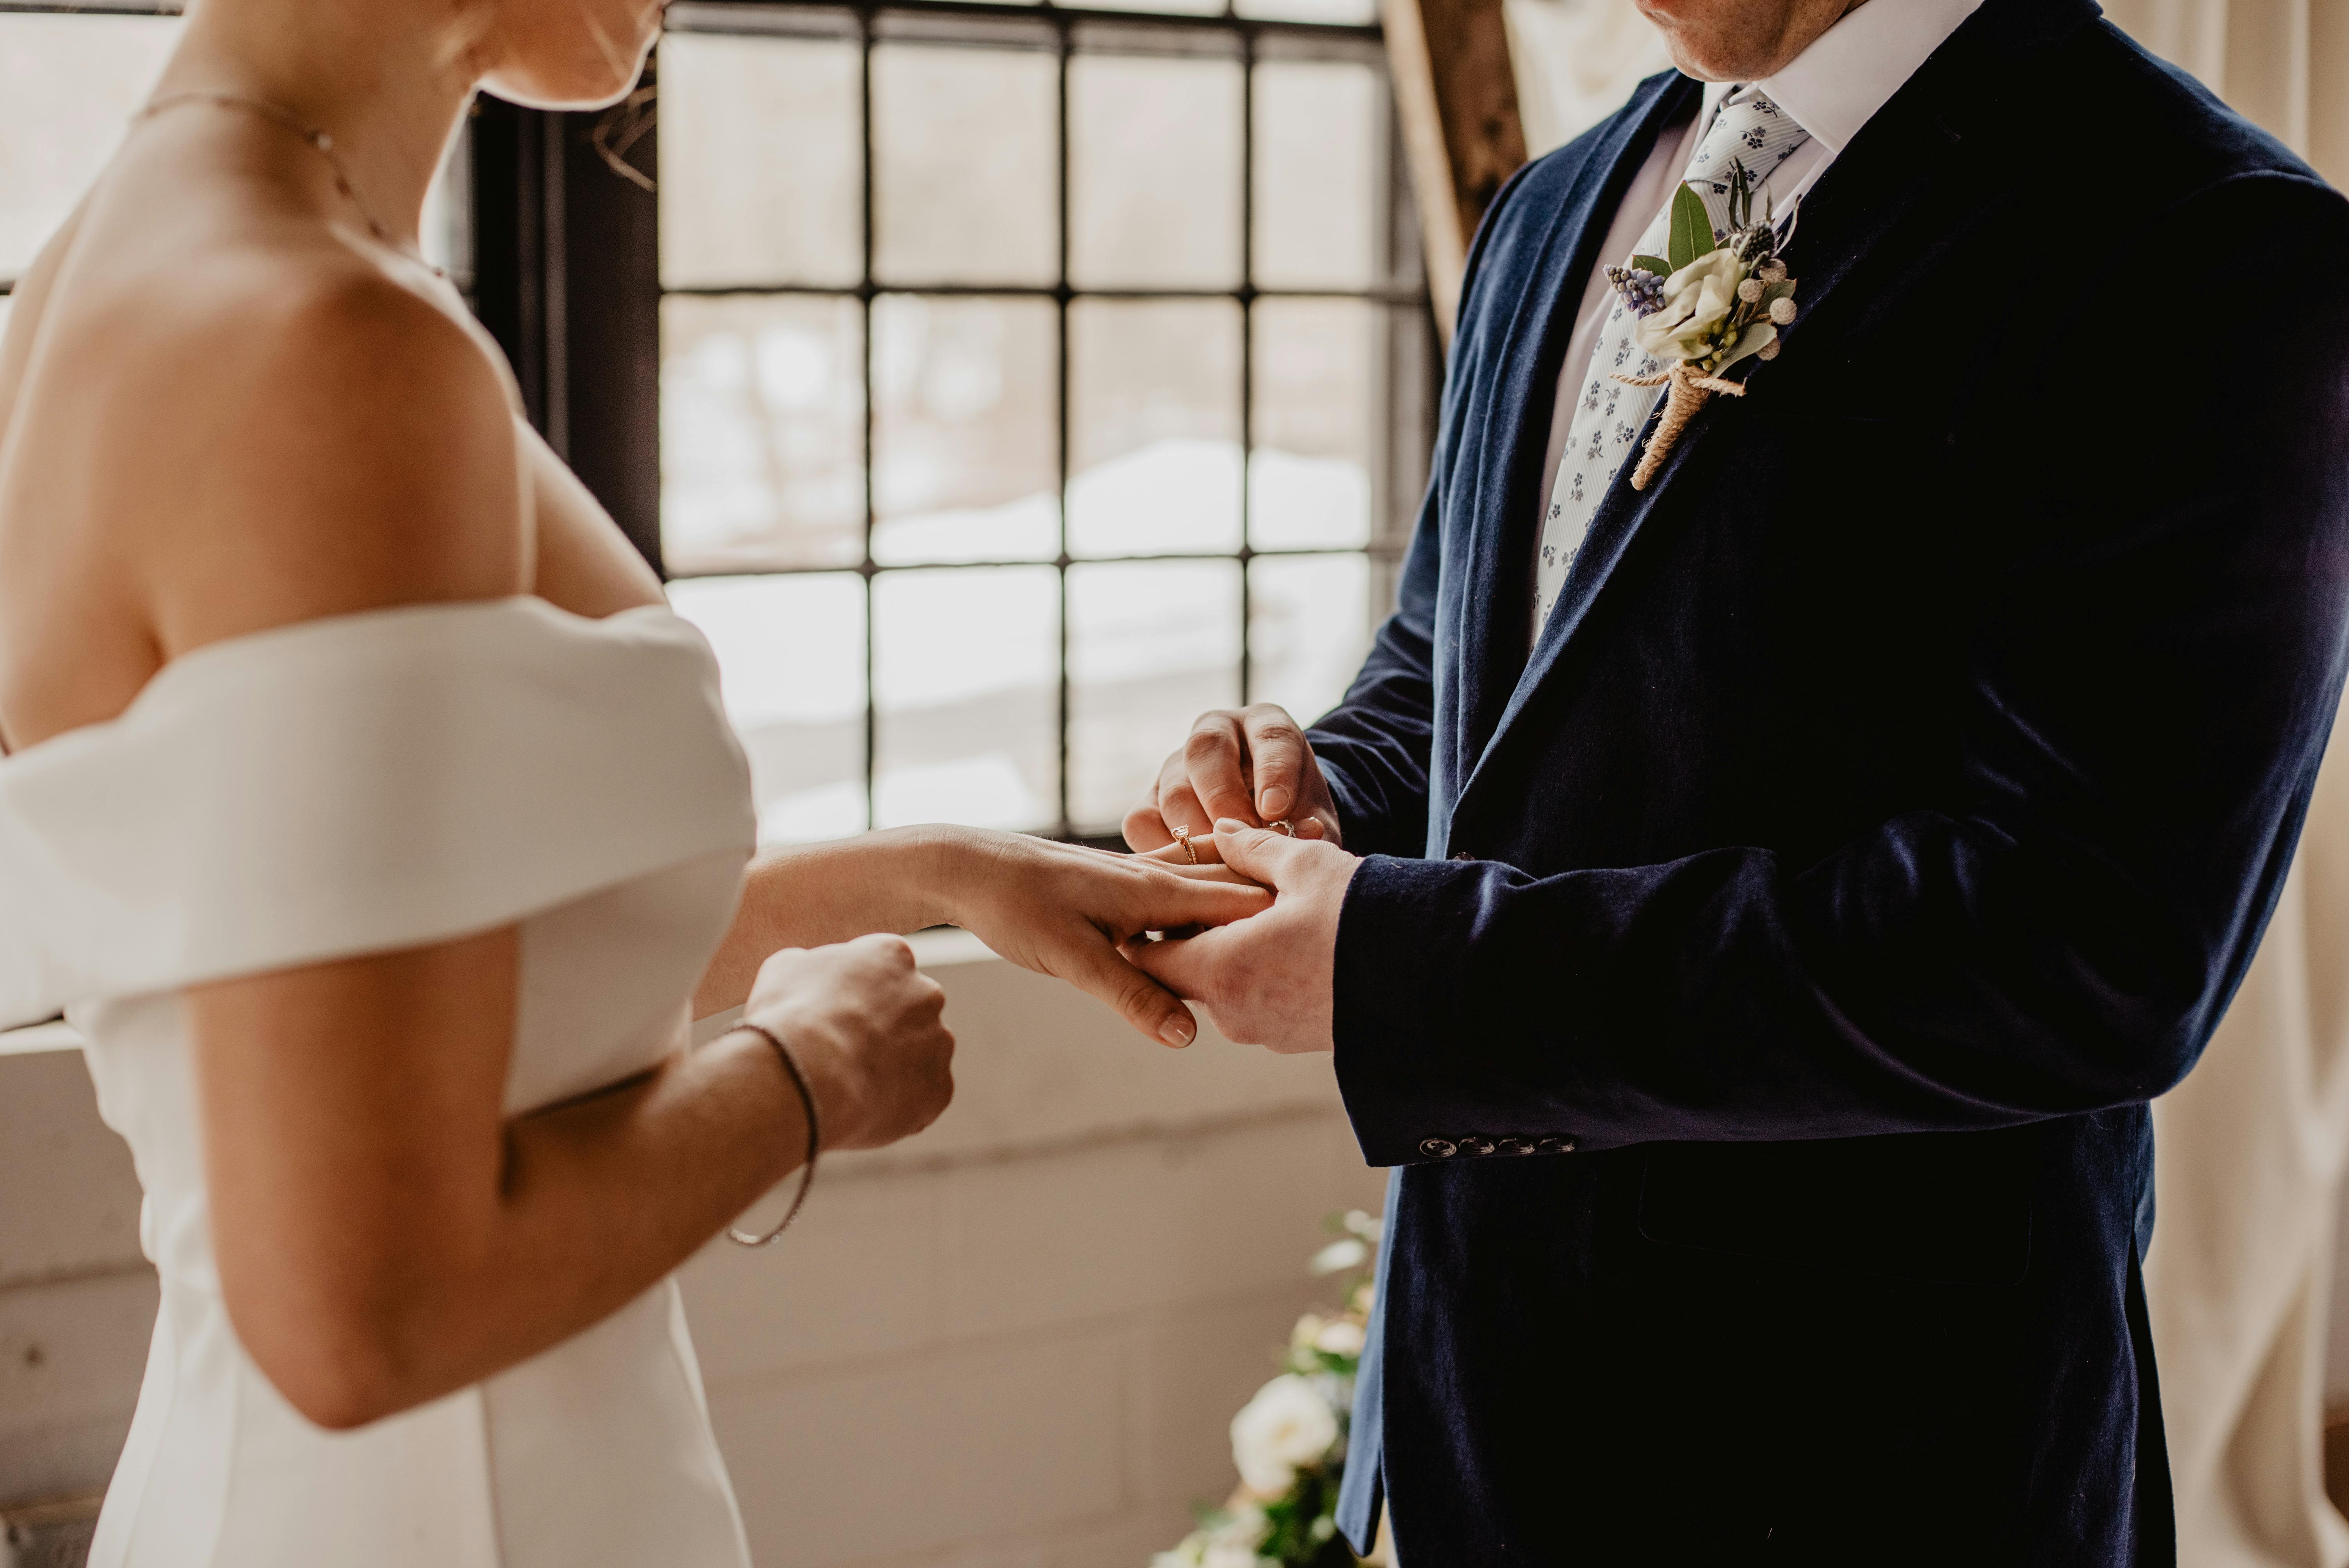 Una novia y un novio intercambiando anillos | Fuente: Pexels